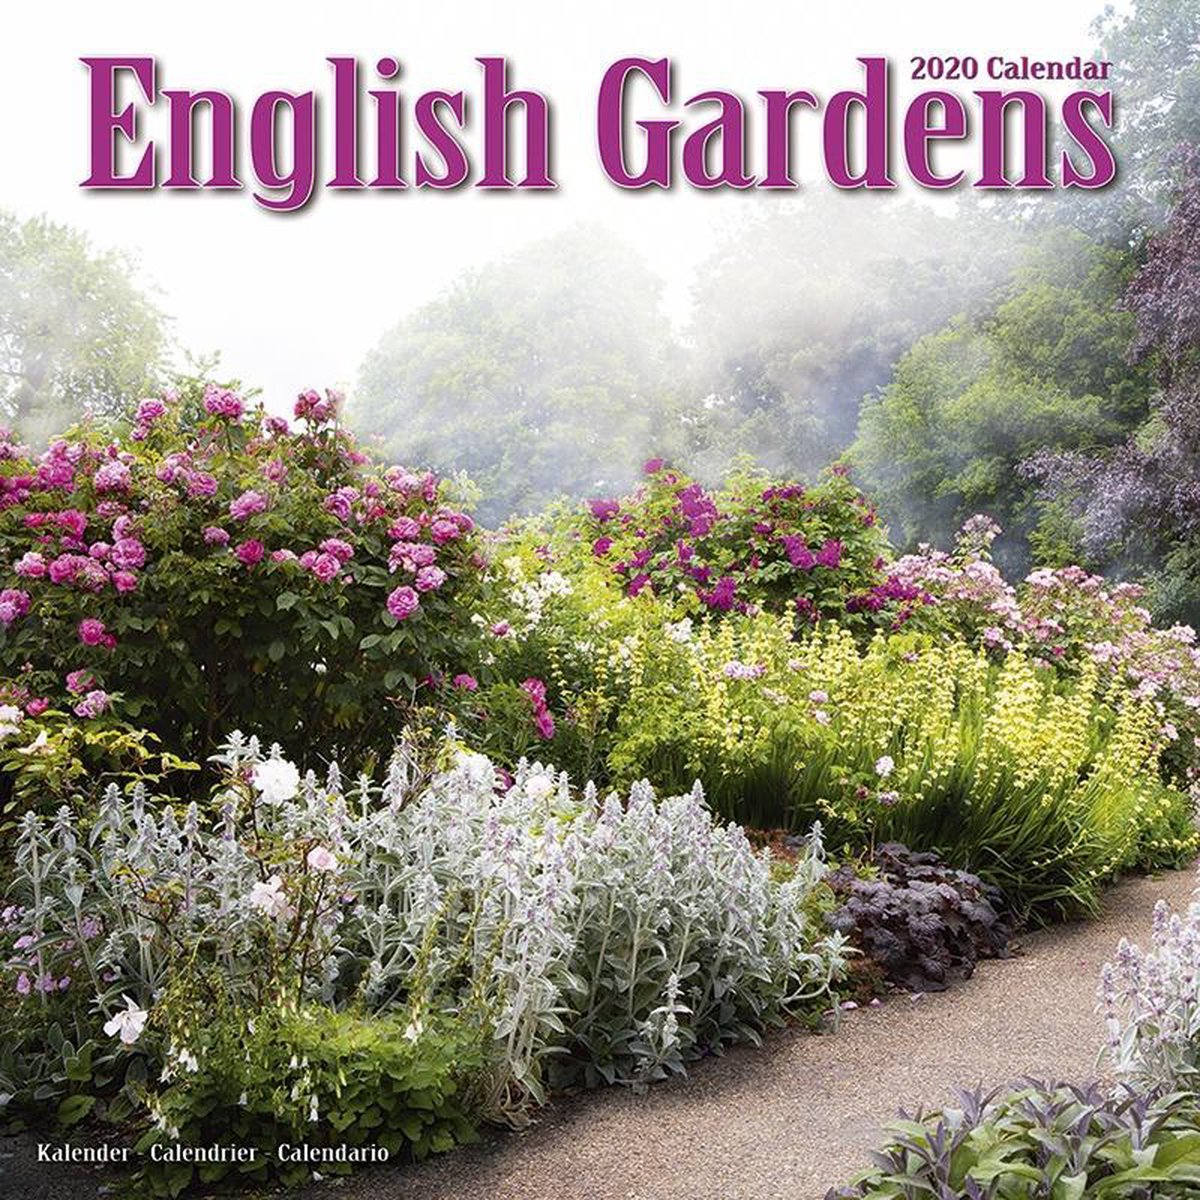 English Gardens Kalender 2020